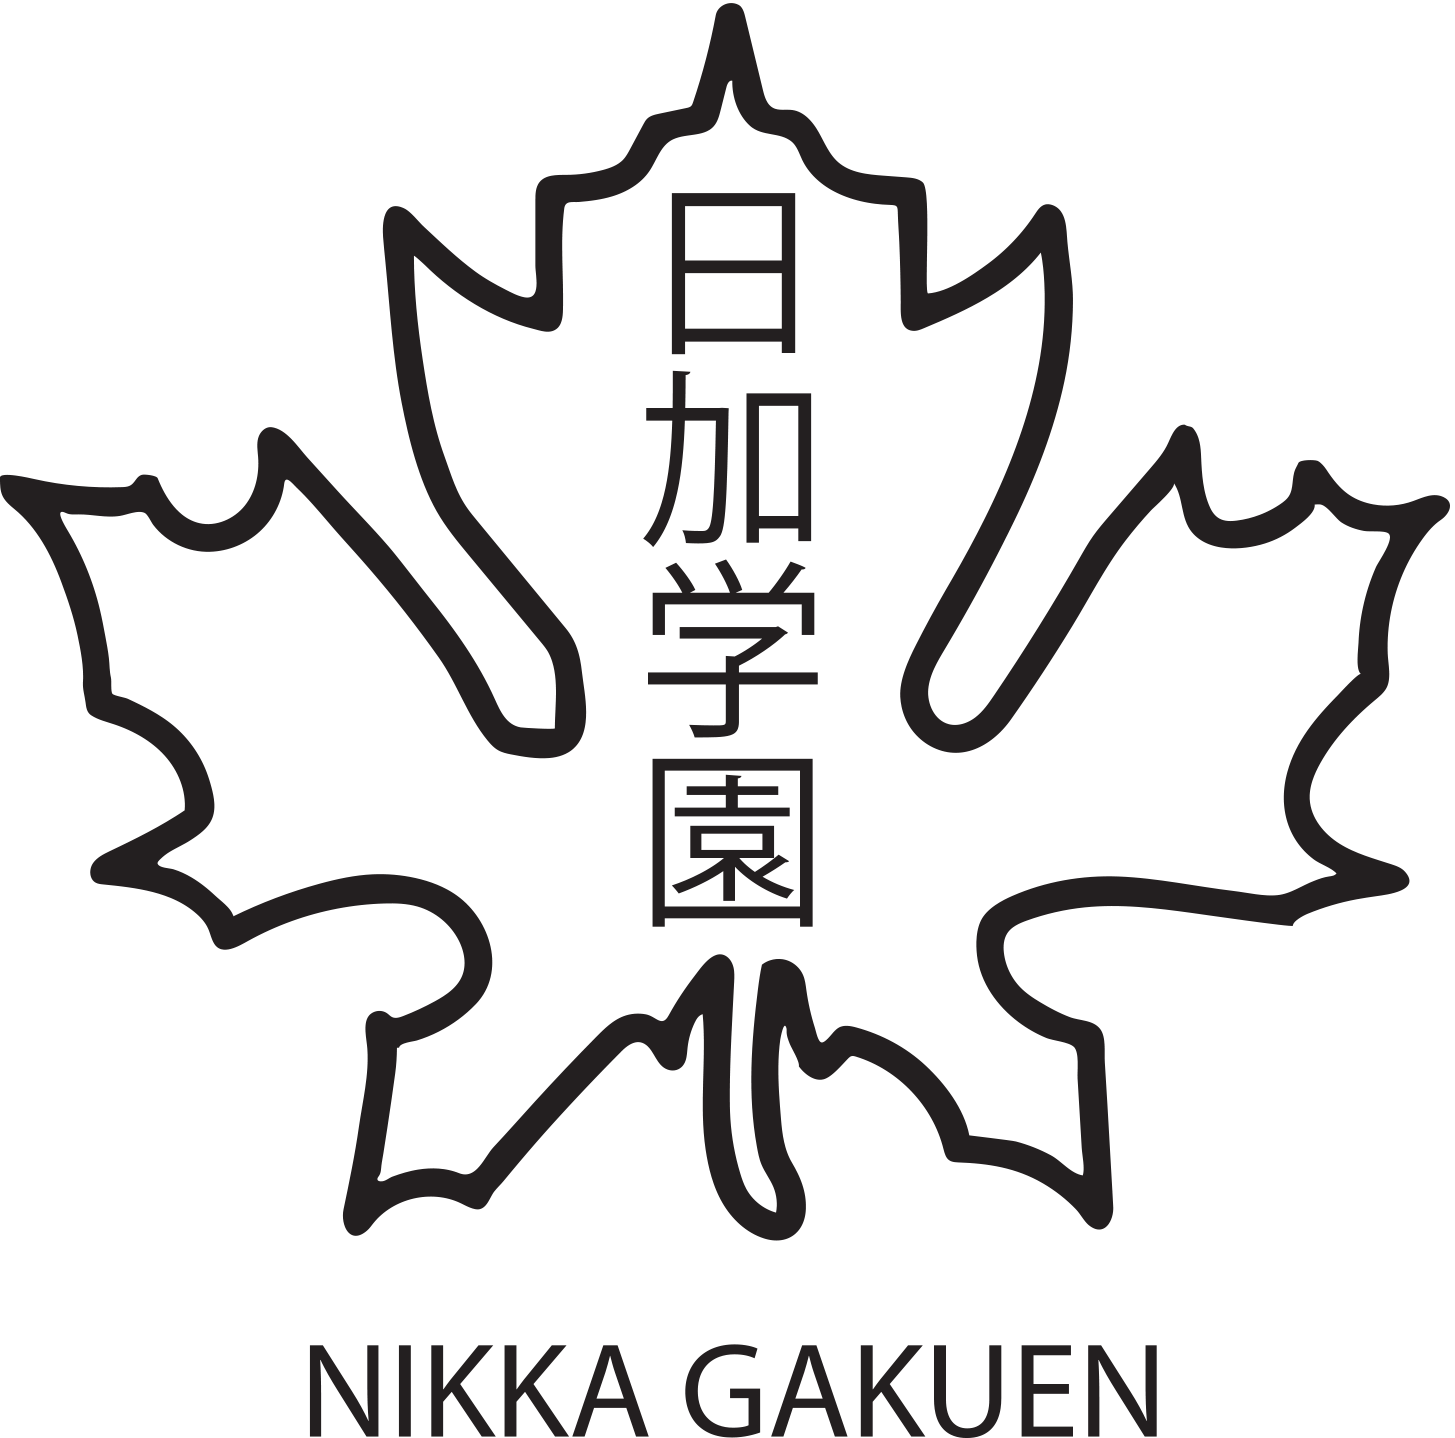 Nikka Gakuen